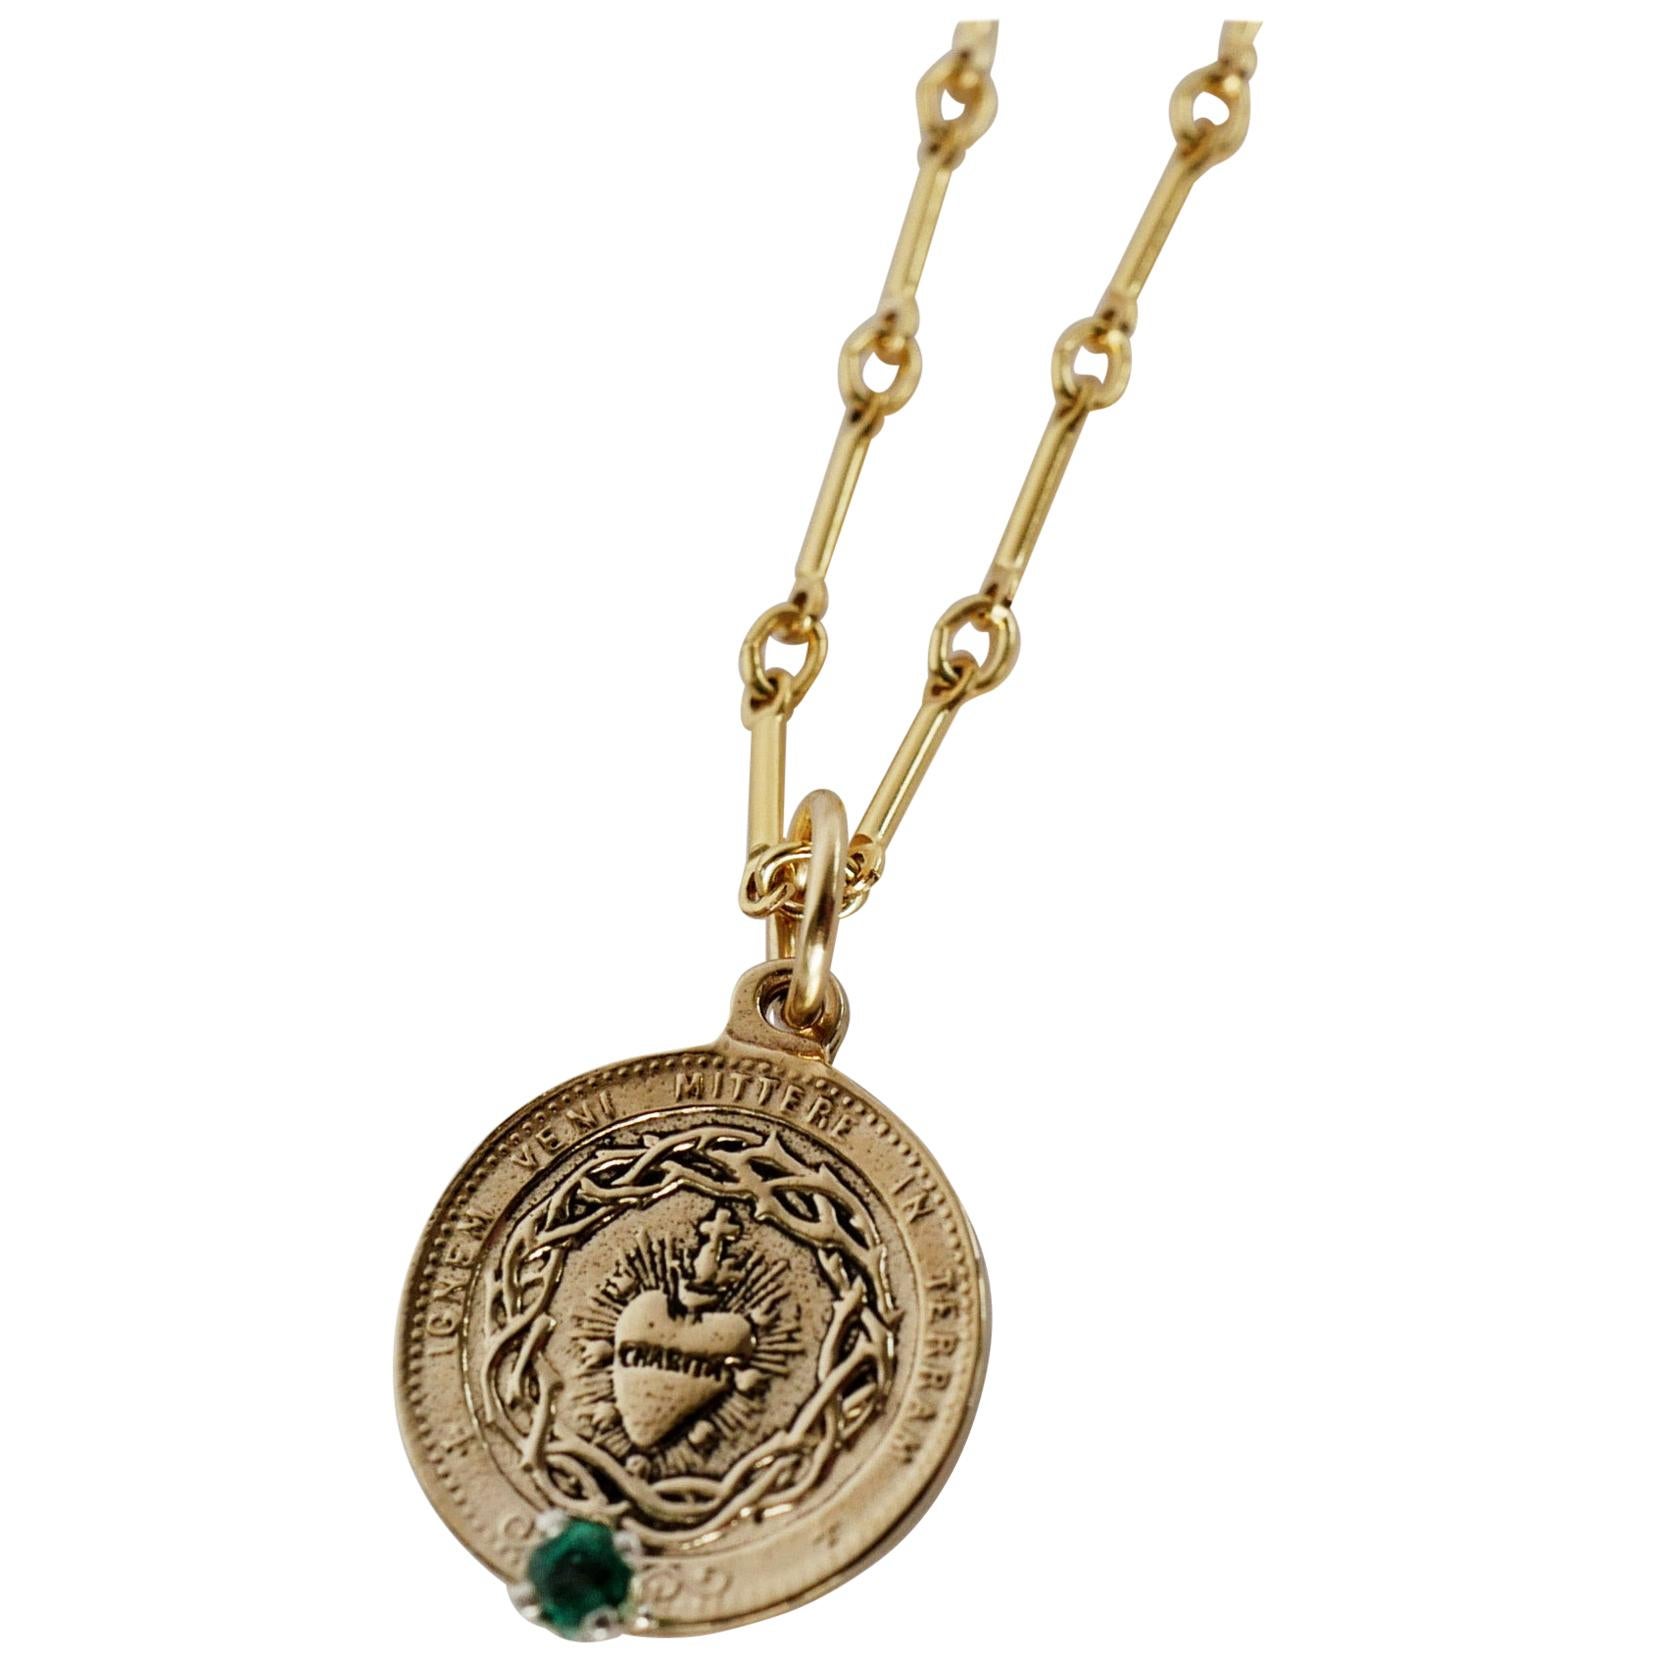 Brilliant Cut Tourmaline Sacred Heart Medal Pendant Chain Necklace Gold Vermeil J Dauphin For Sale